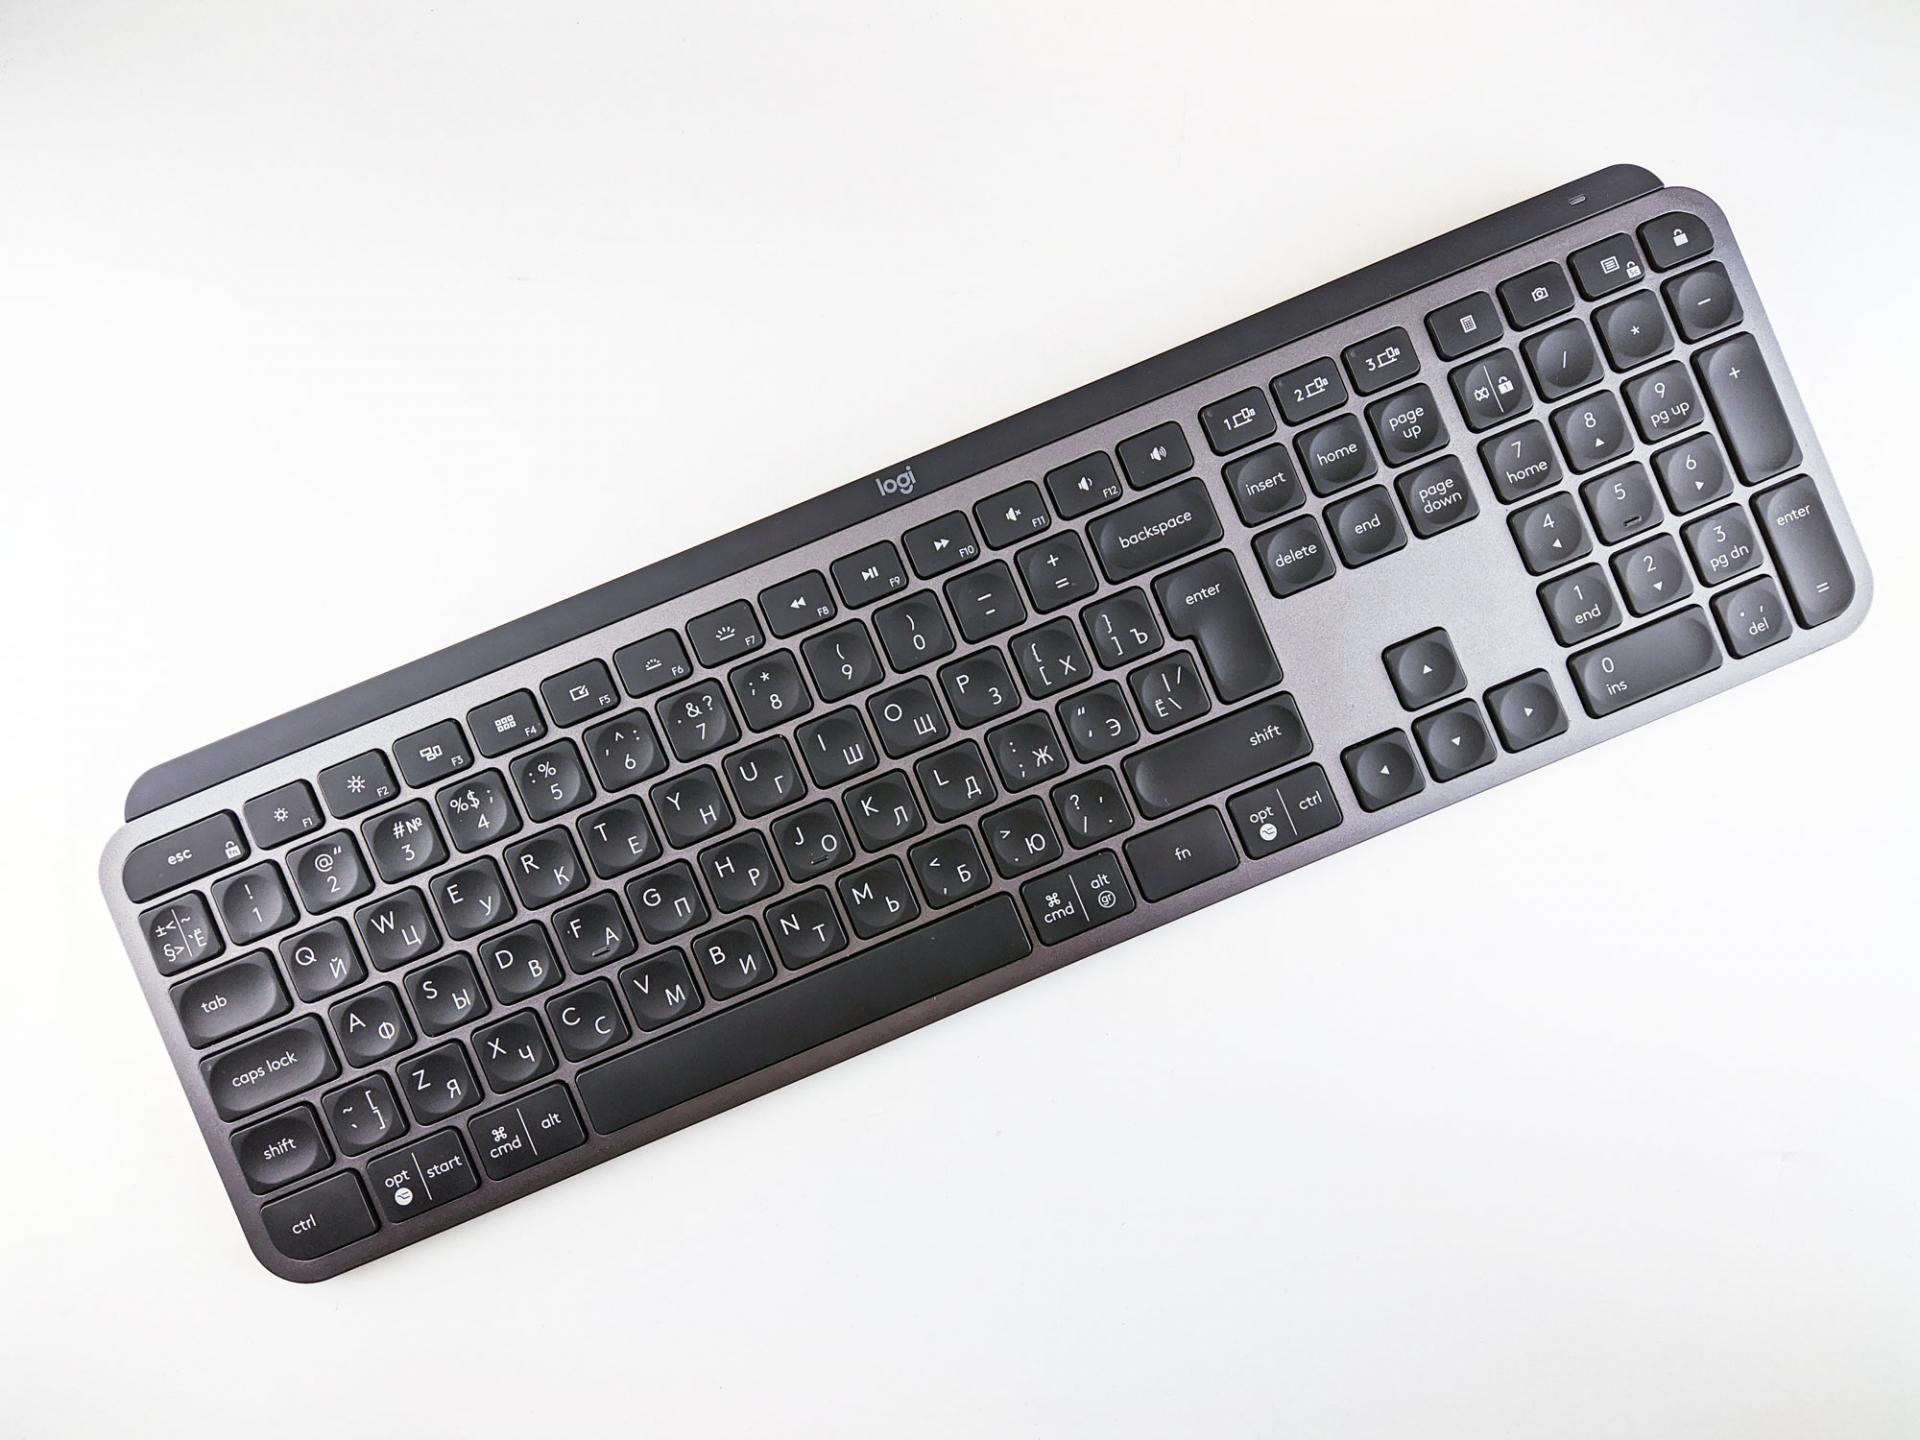 Тест-драйв клавиатуры Logitech MX keys